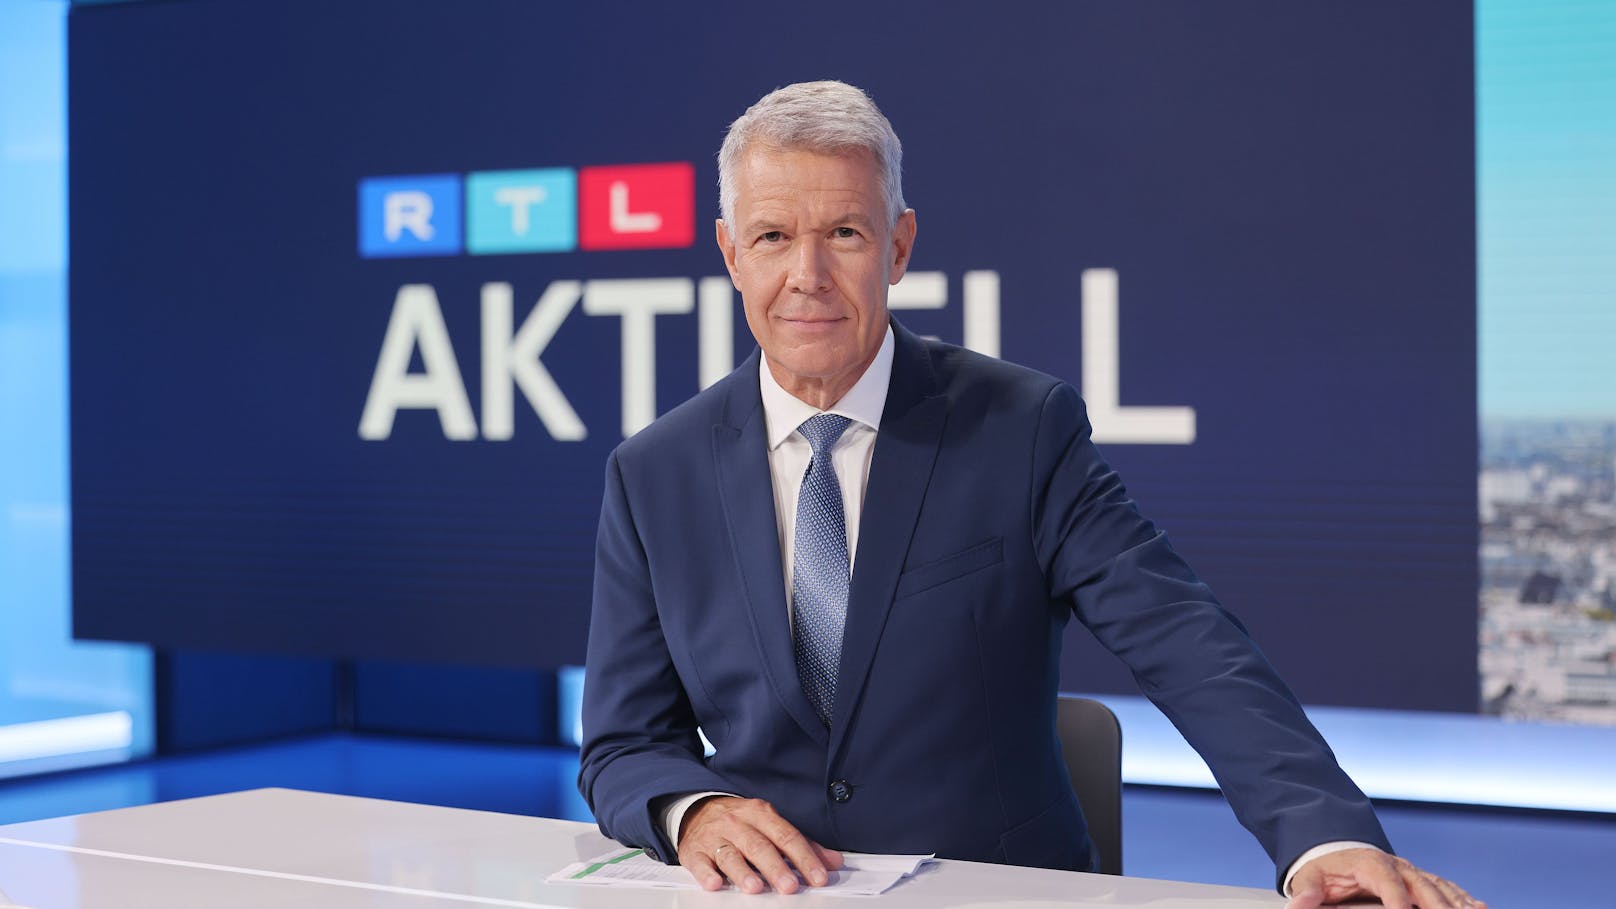 Peter Kloeppel gehört zu den bekanntesten Nachrichtenmoderatoren des deutschen Fernsehens. Doch nun lässt der 65-Jährige in einem "Stern"-Interview aufhorchen: "Ende August ist meine letzte Sendung".